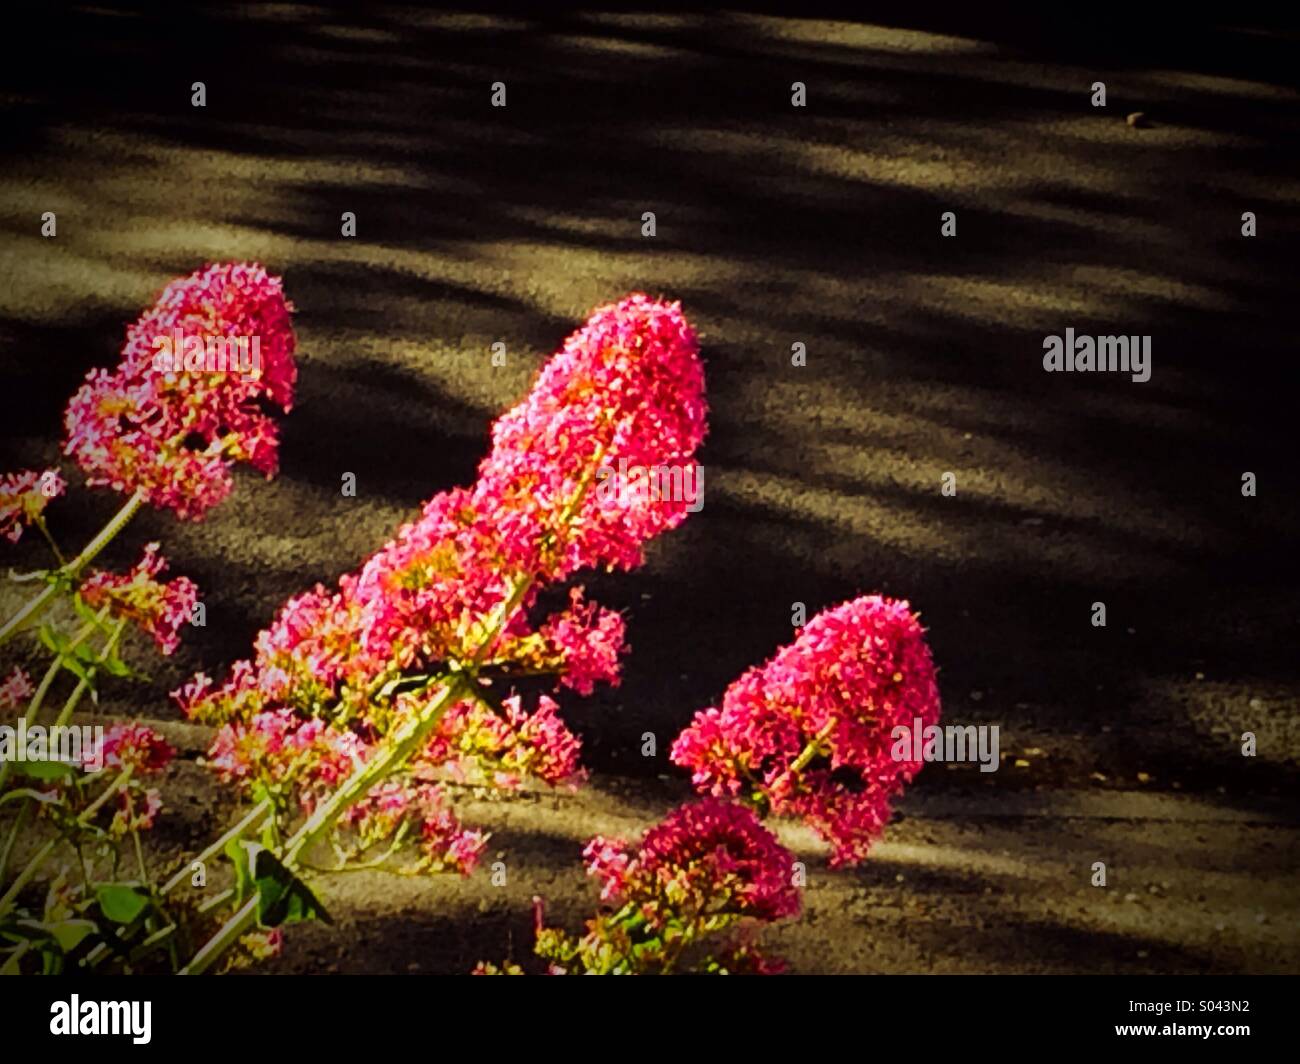 Valarium in bloom Stock Photo